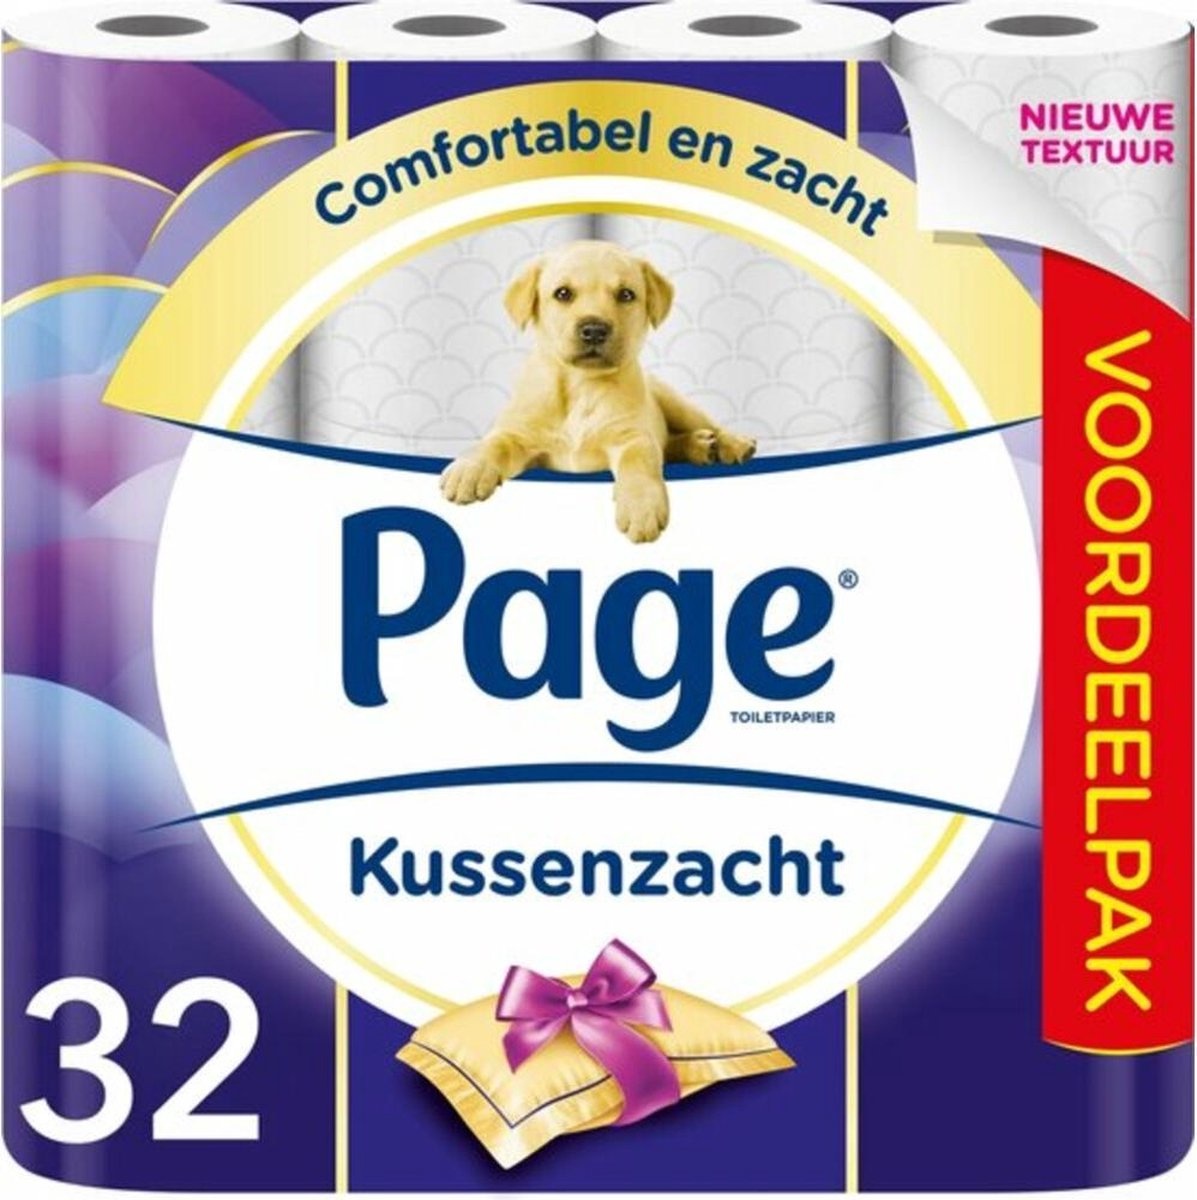 Page toiletpapier - Kussenzacht wc papier - 3-laags - Voordeelverpakking - 32 rollen